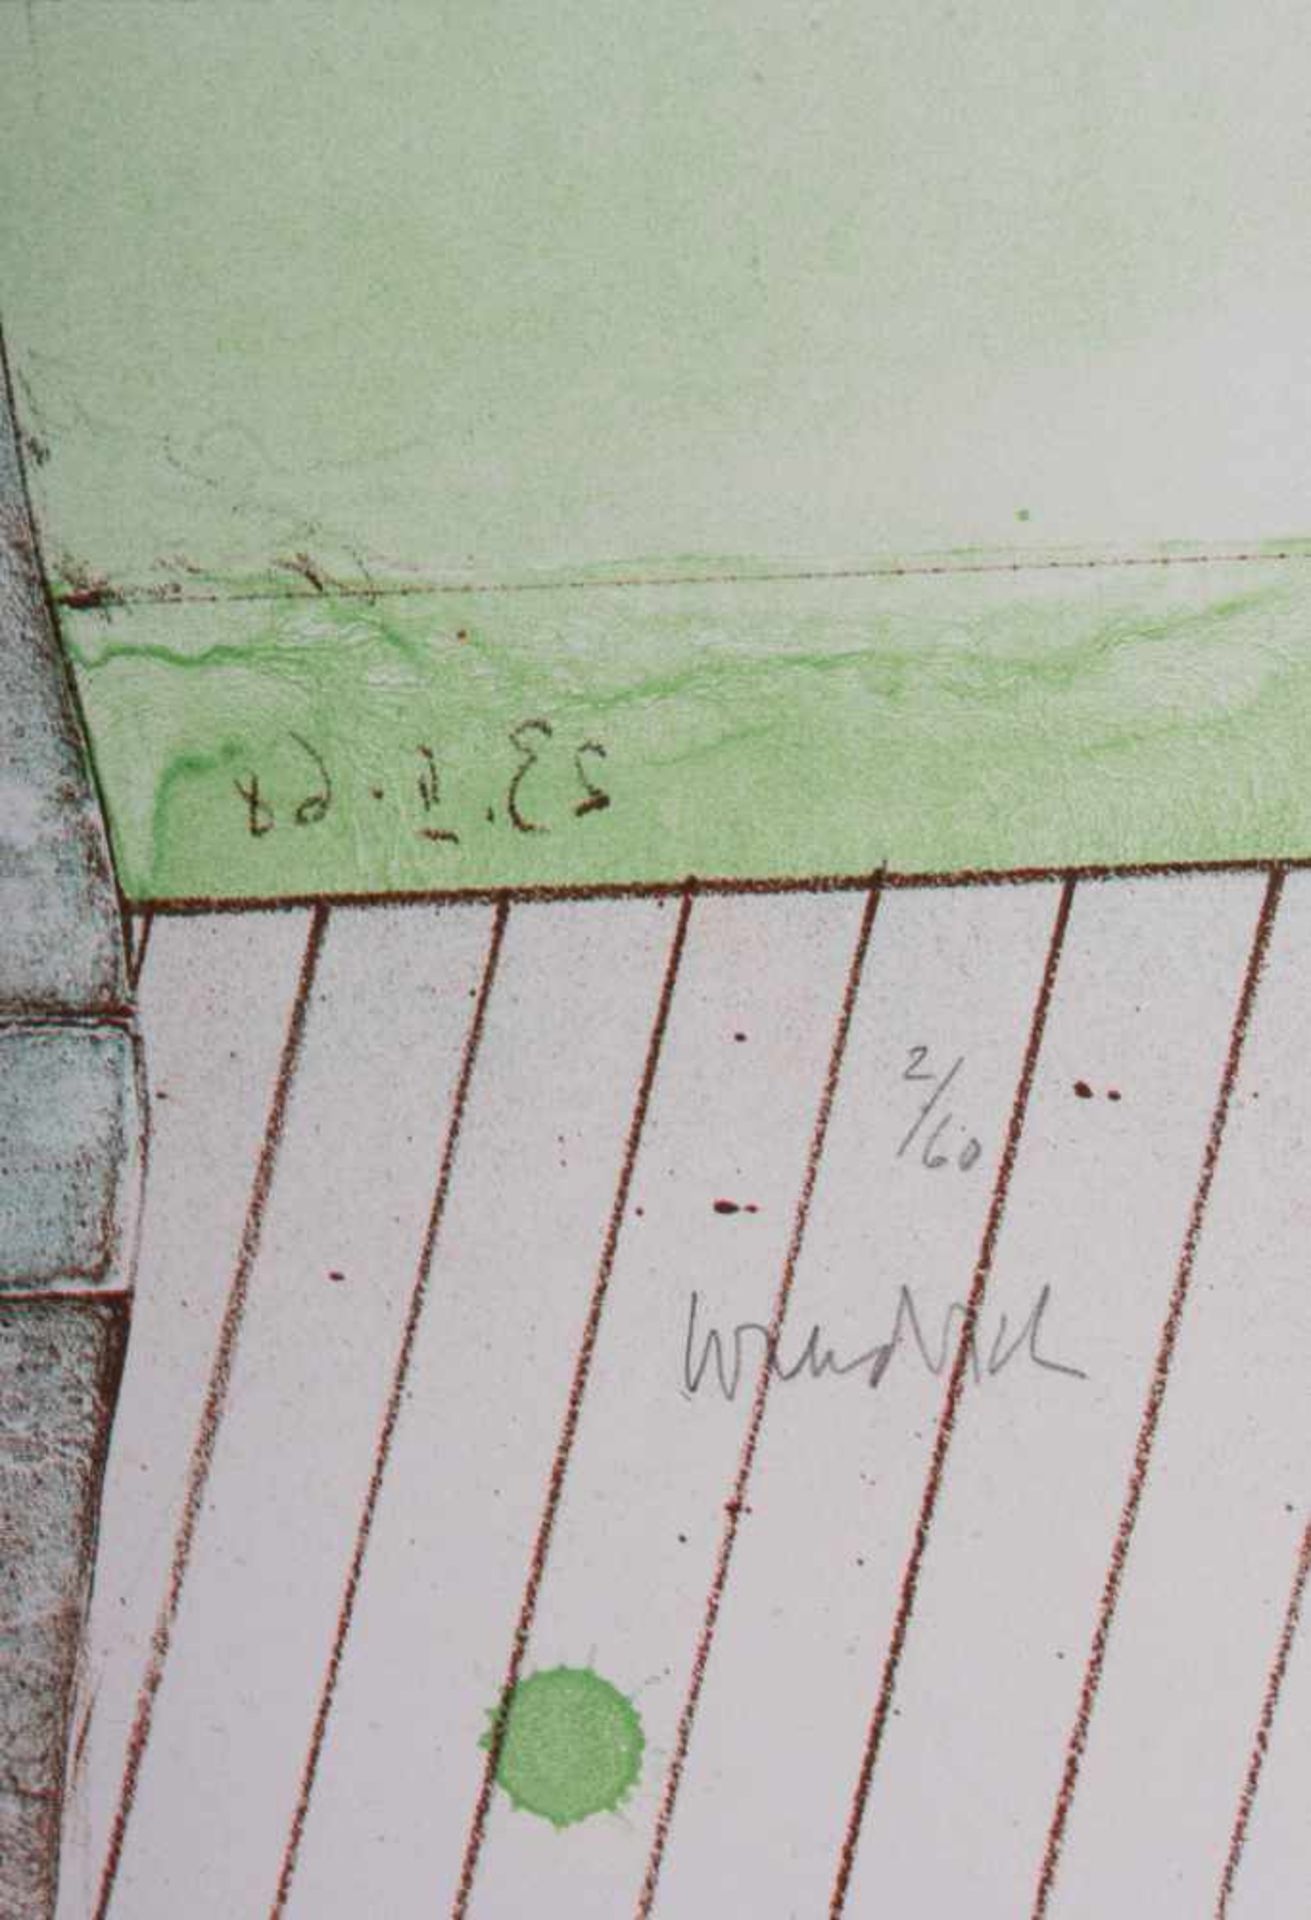 Paul WUNDERLICH (1927-2010) "ohne Titel" Grafik-Farblithografie, 65 cm x 49,8 cm, rechts - Bild 2 aus 2